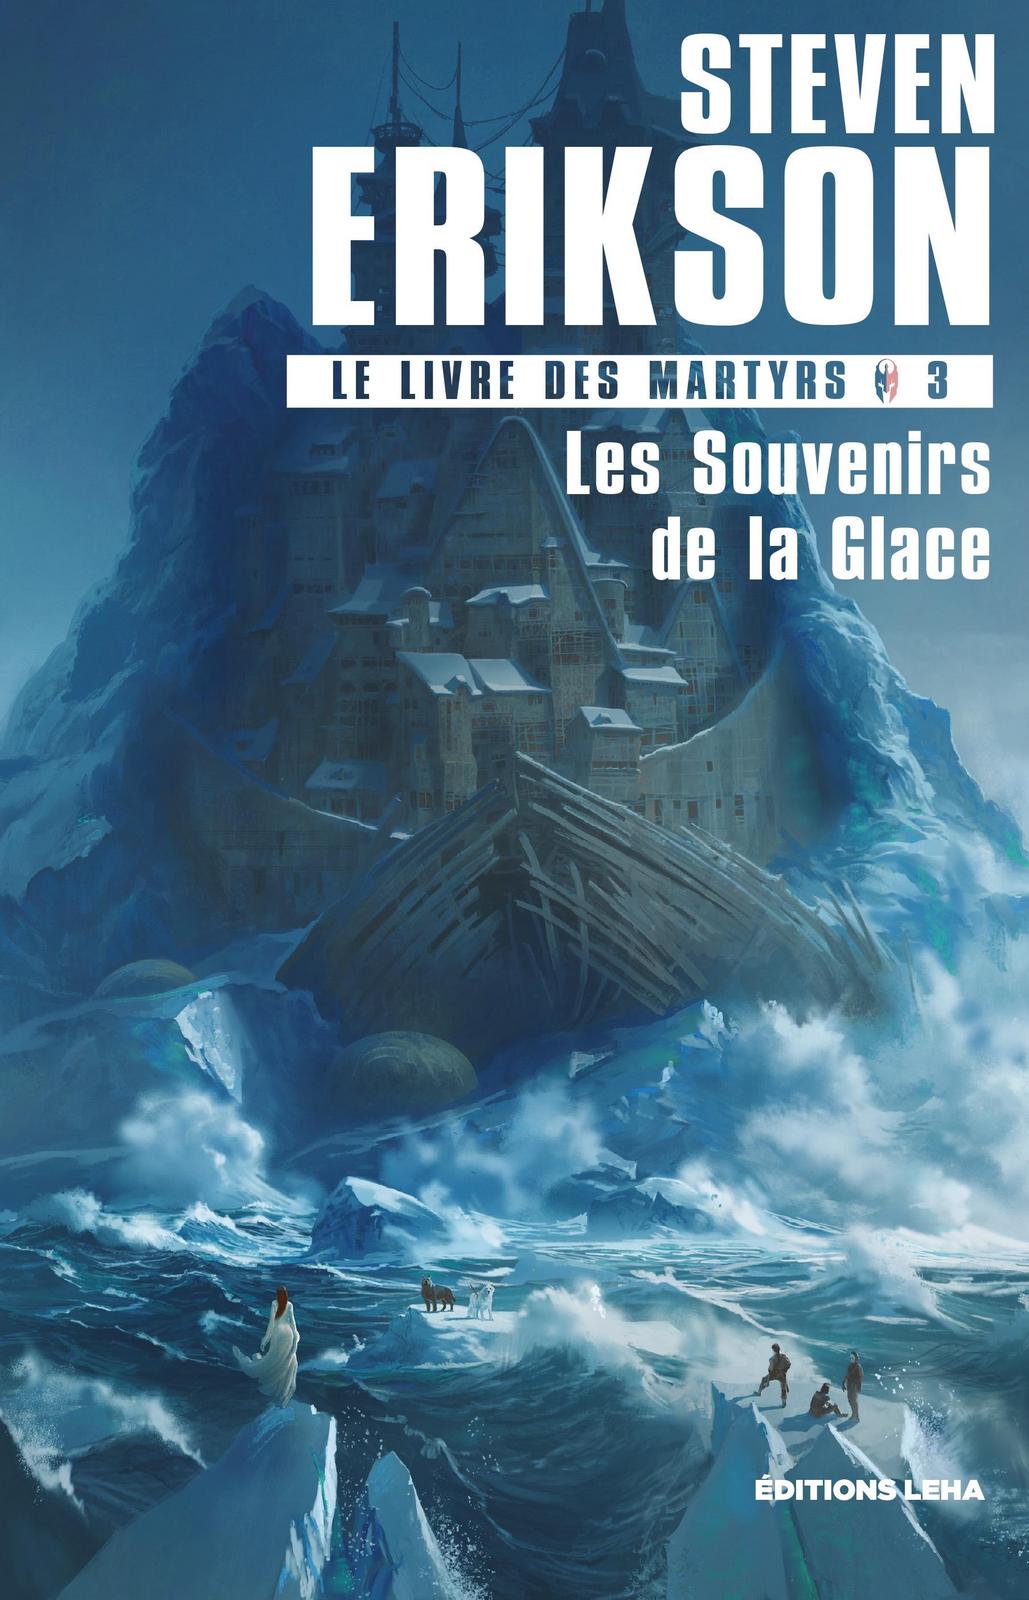 Steven Erikson: Les Souvenirs de la glace (French language, 2019, Éditions Leha)